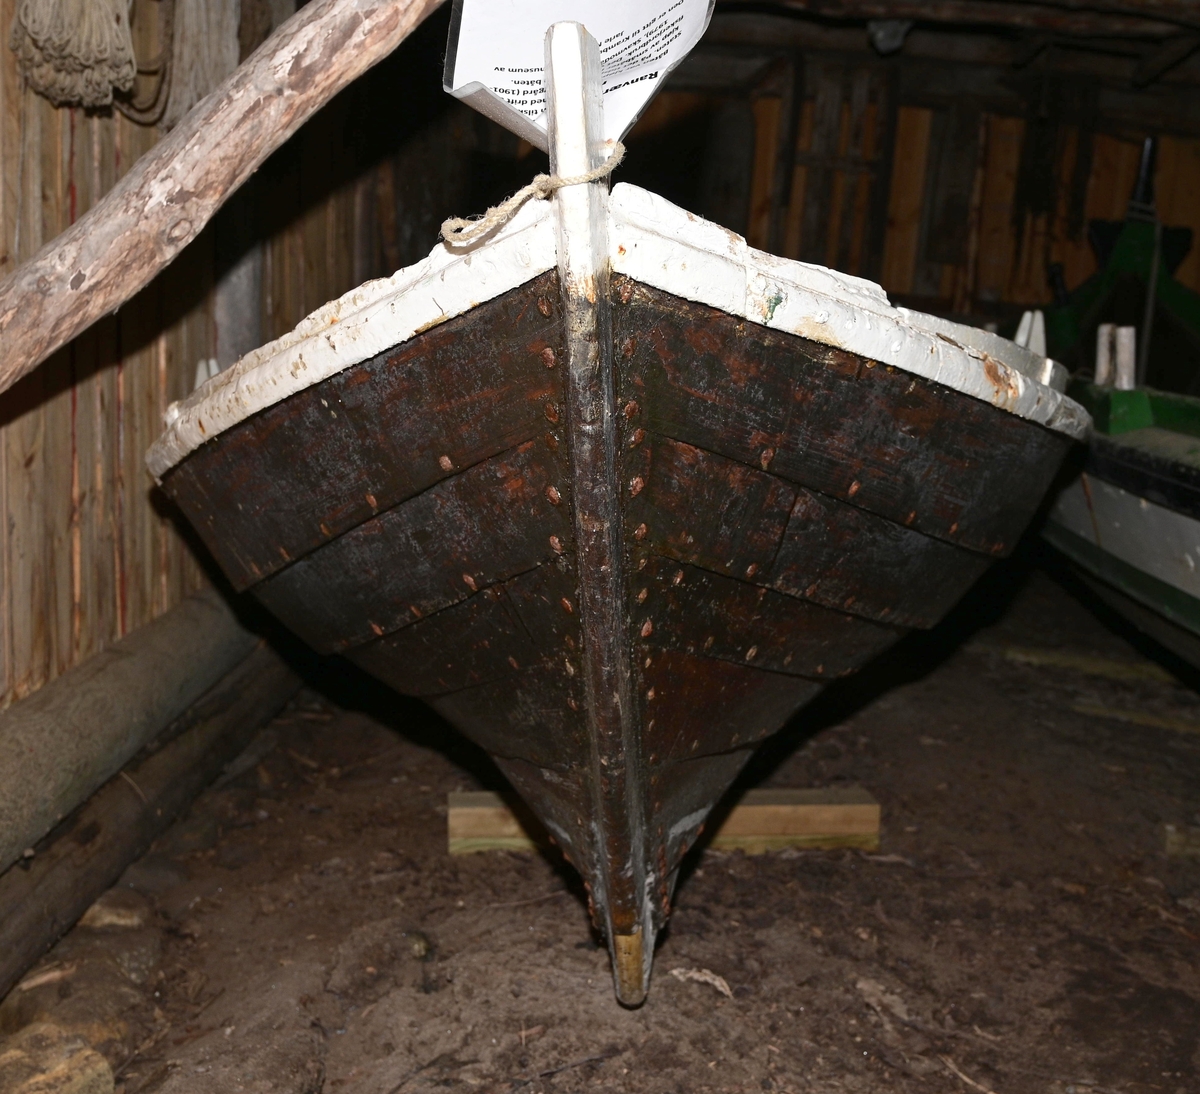 Båten er ei to og ei halv roms spisse, som er klinbygd med 6 bordganger. Den har to årepar.